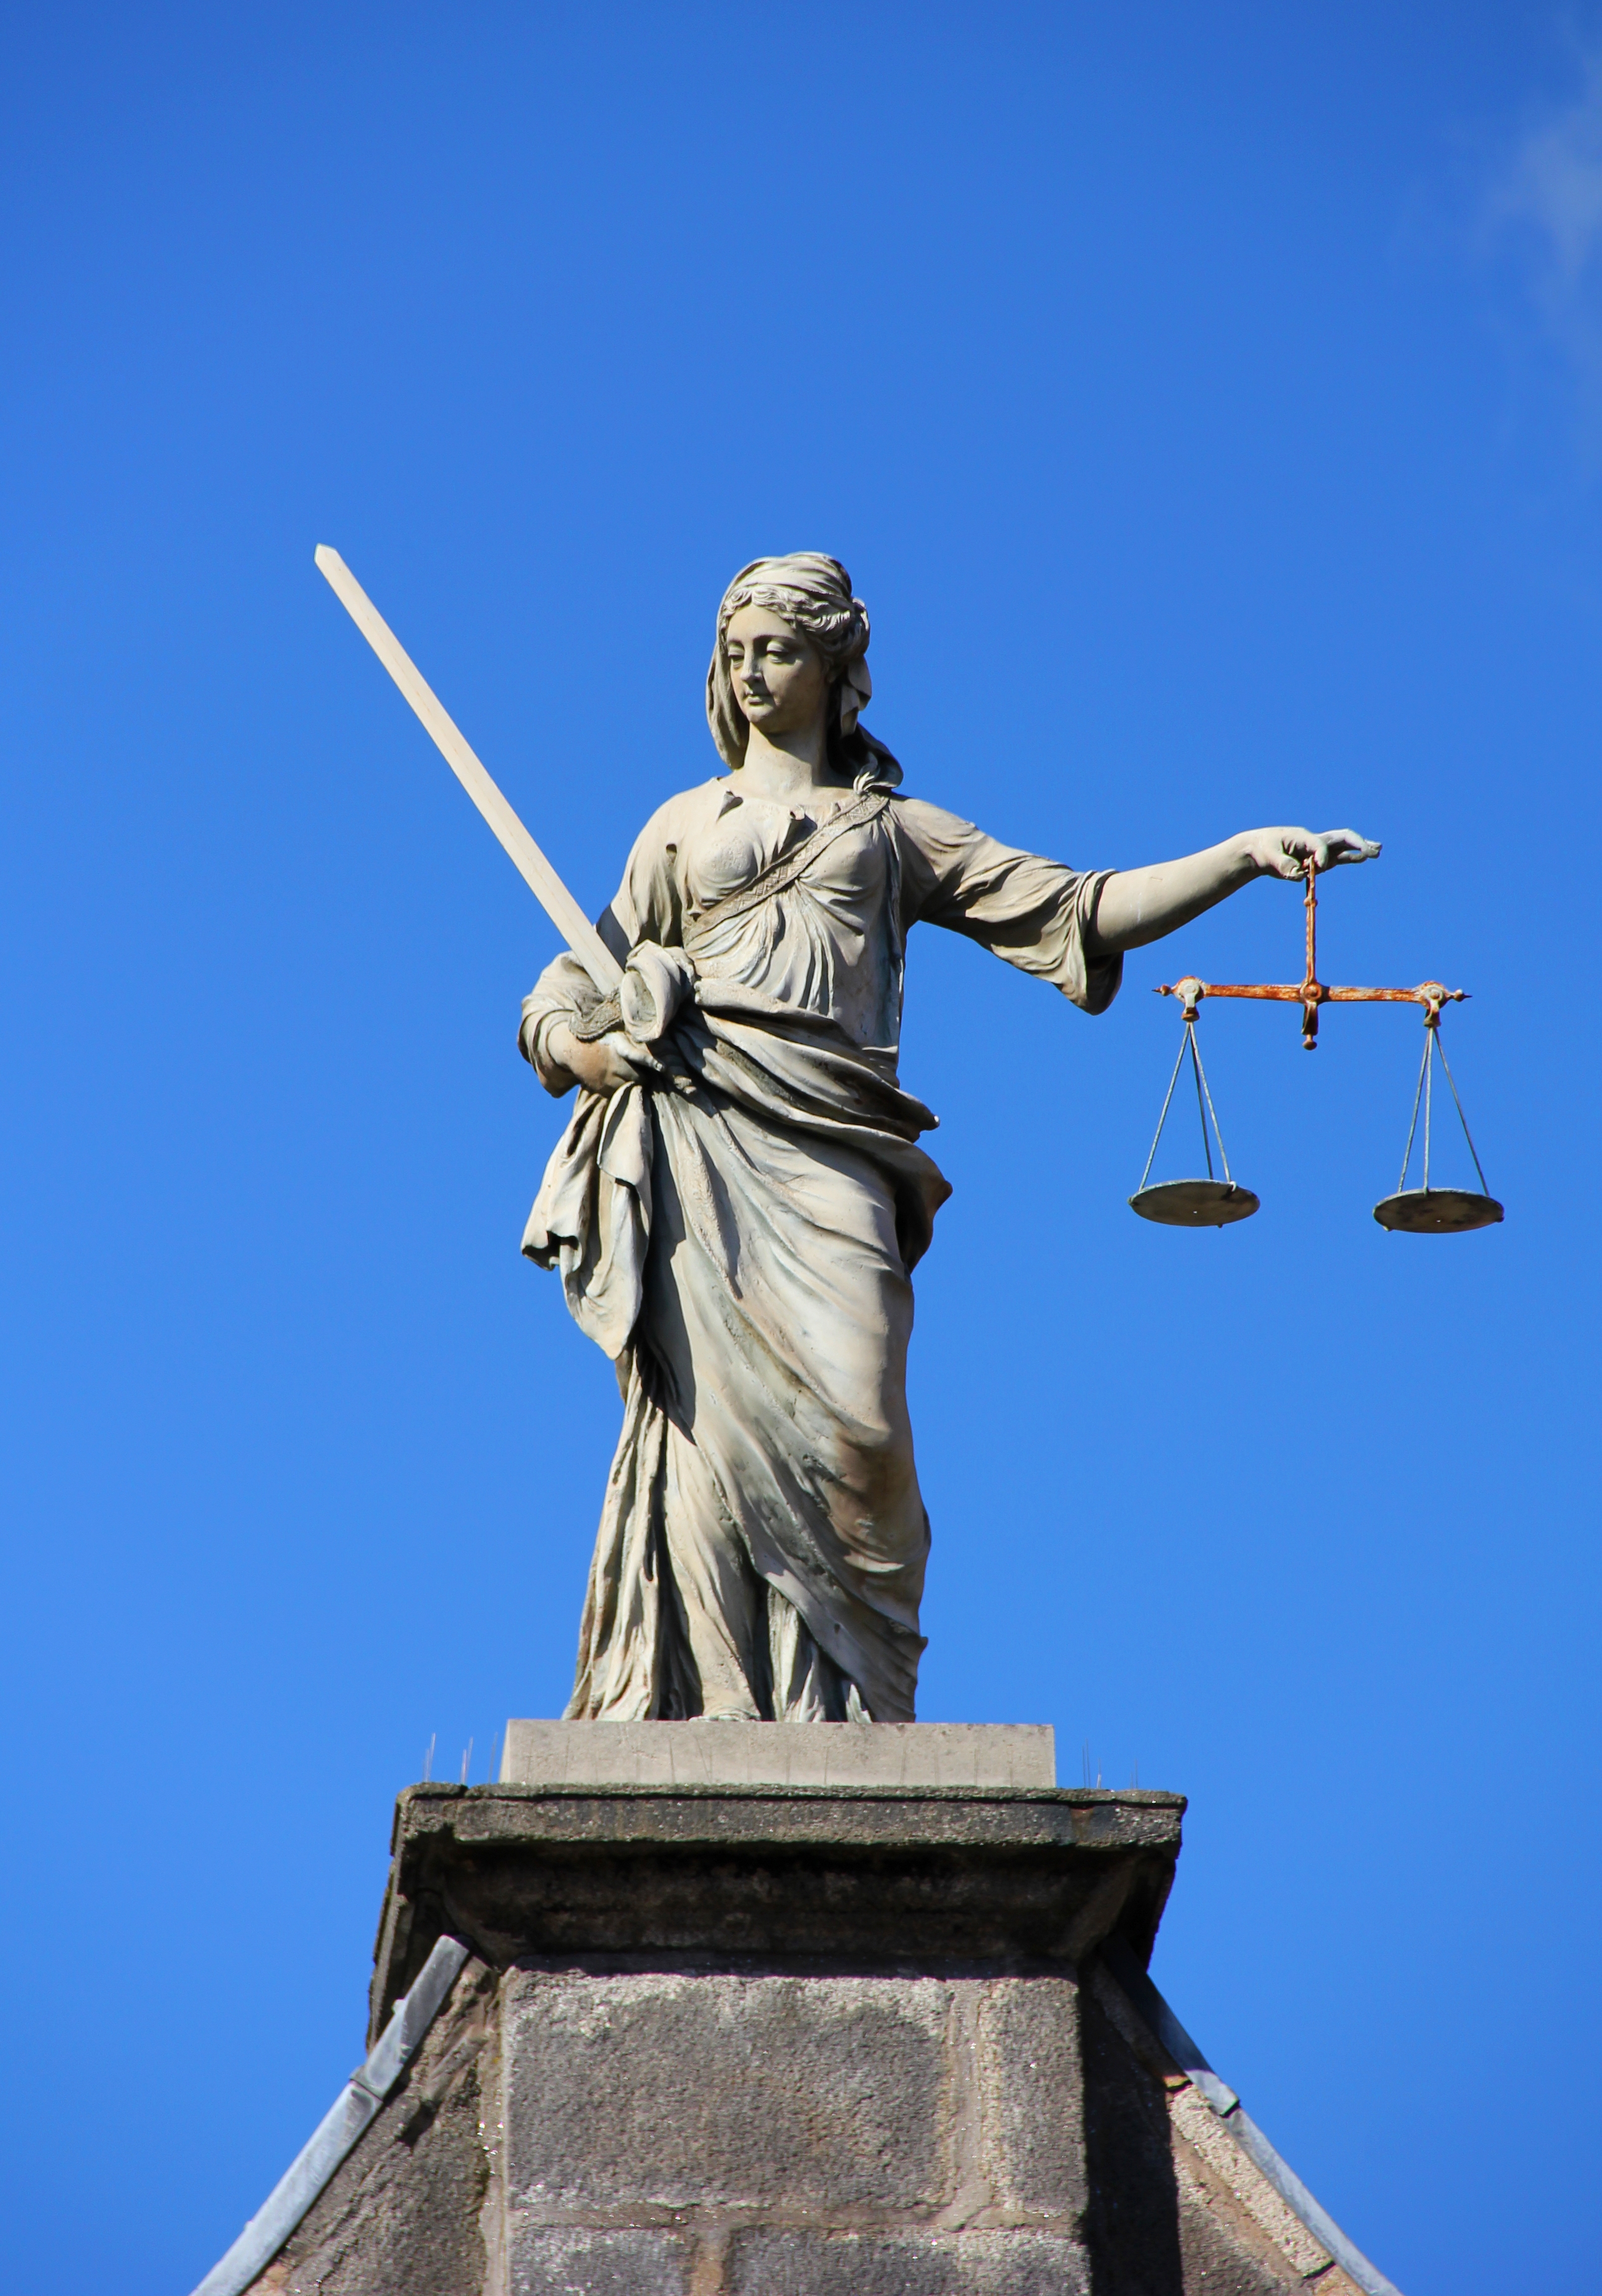 La justice. Скульптура Фемиды. Статуя справедливости. Статуя правосудия. Богиня правосудия.